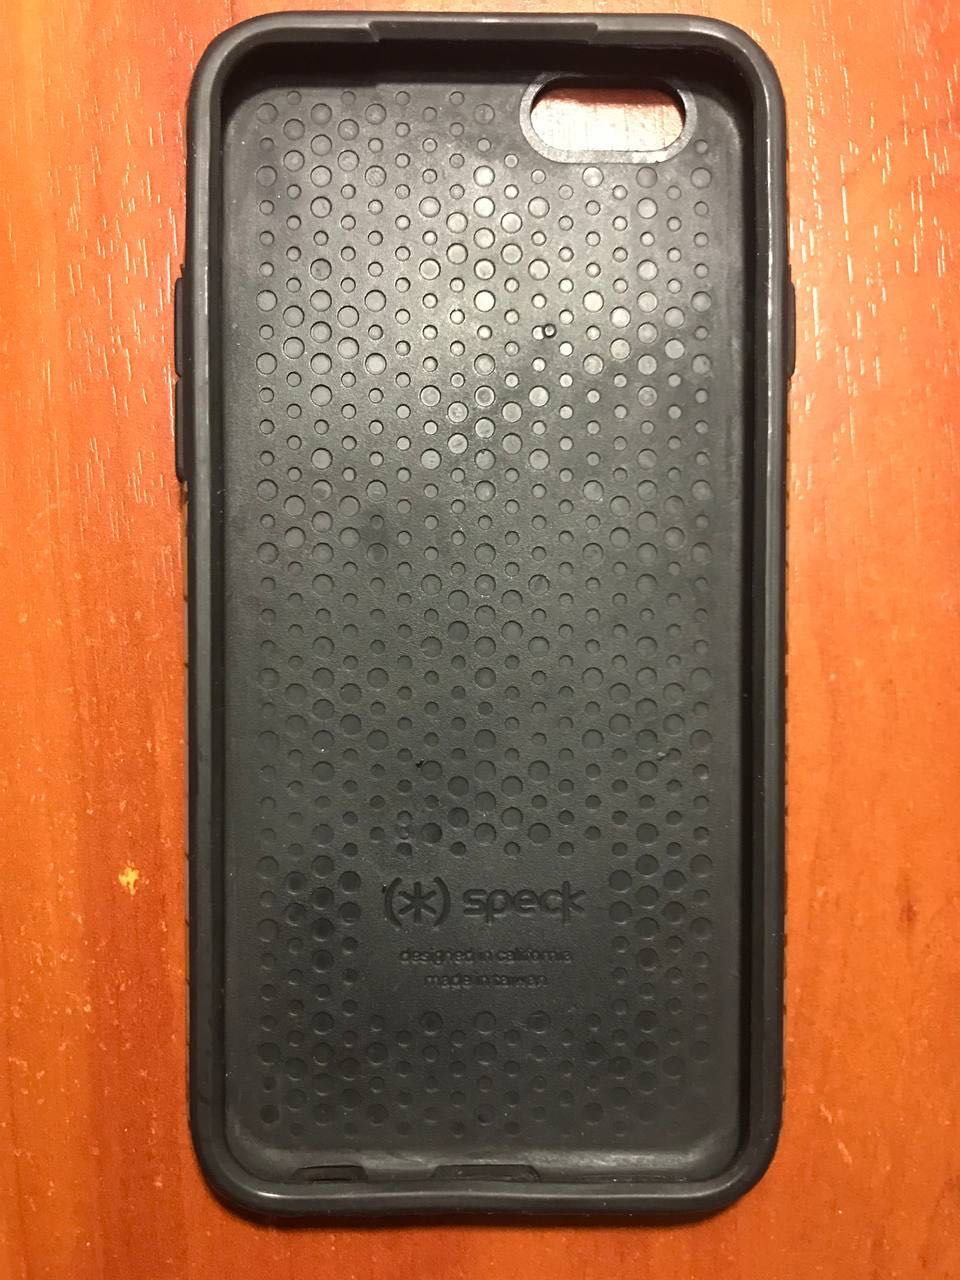 Чехол Speck чохол для IPhone 7/6s/6 оригінальний+ подарунок 3 чохла!